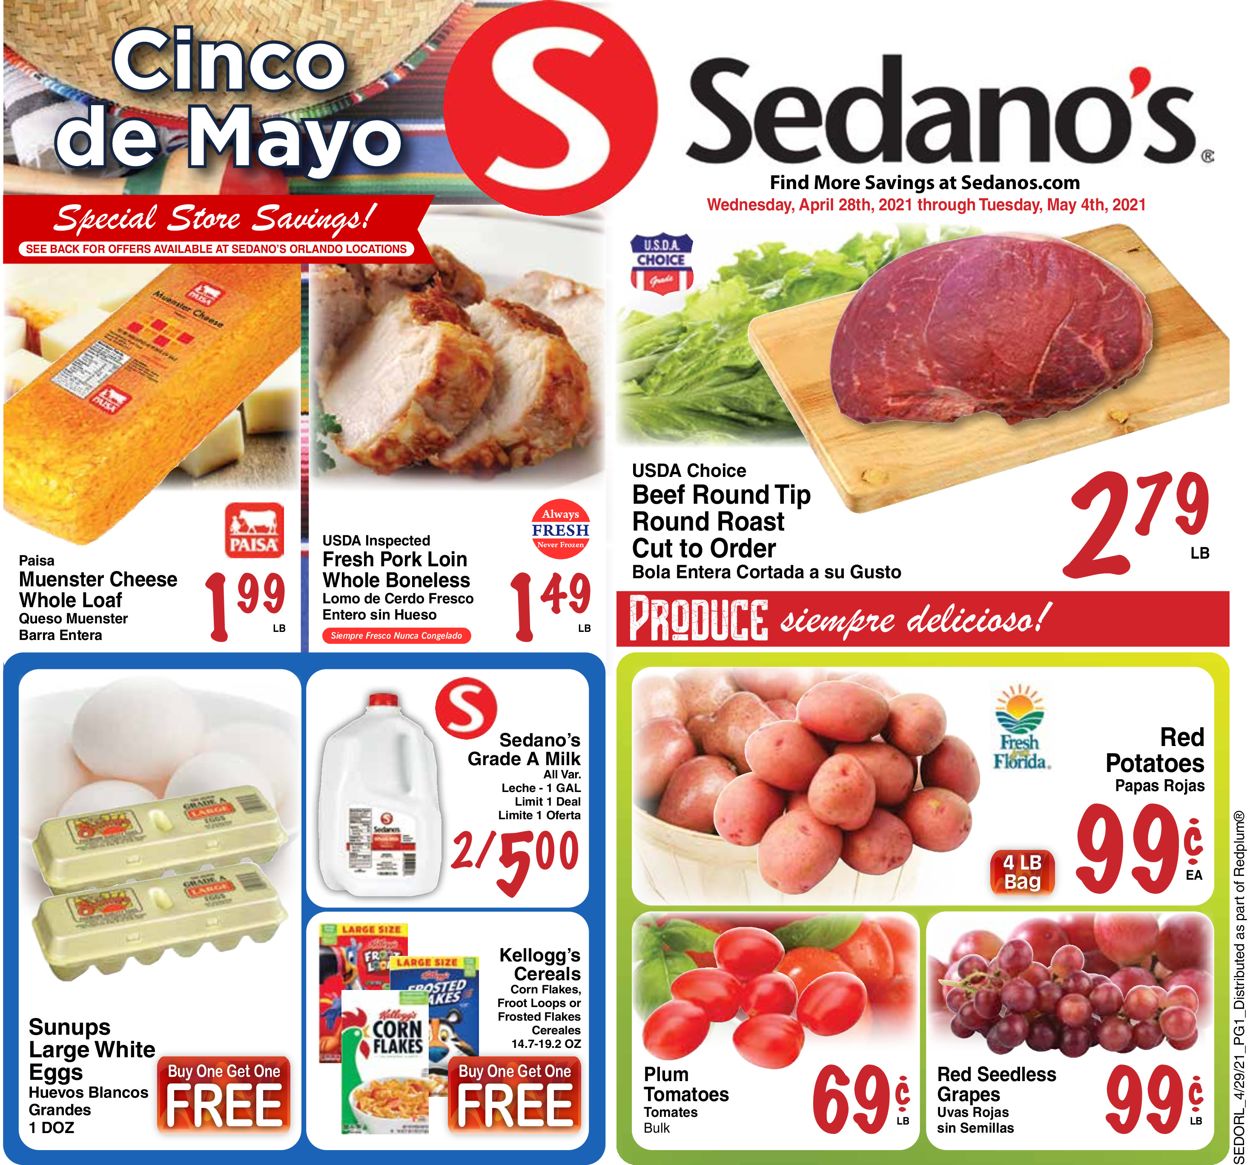 Catalogue Sedano's from 04/28/2021